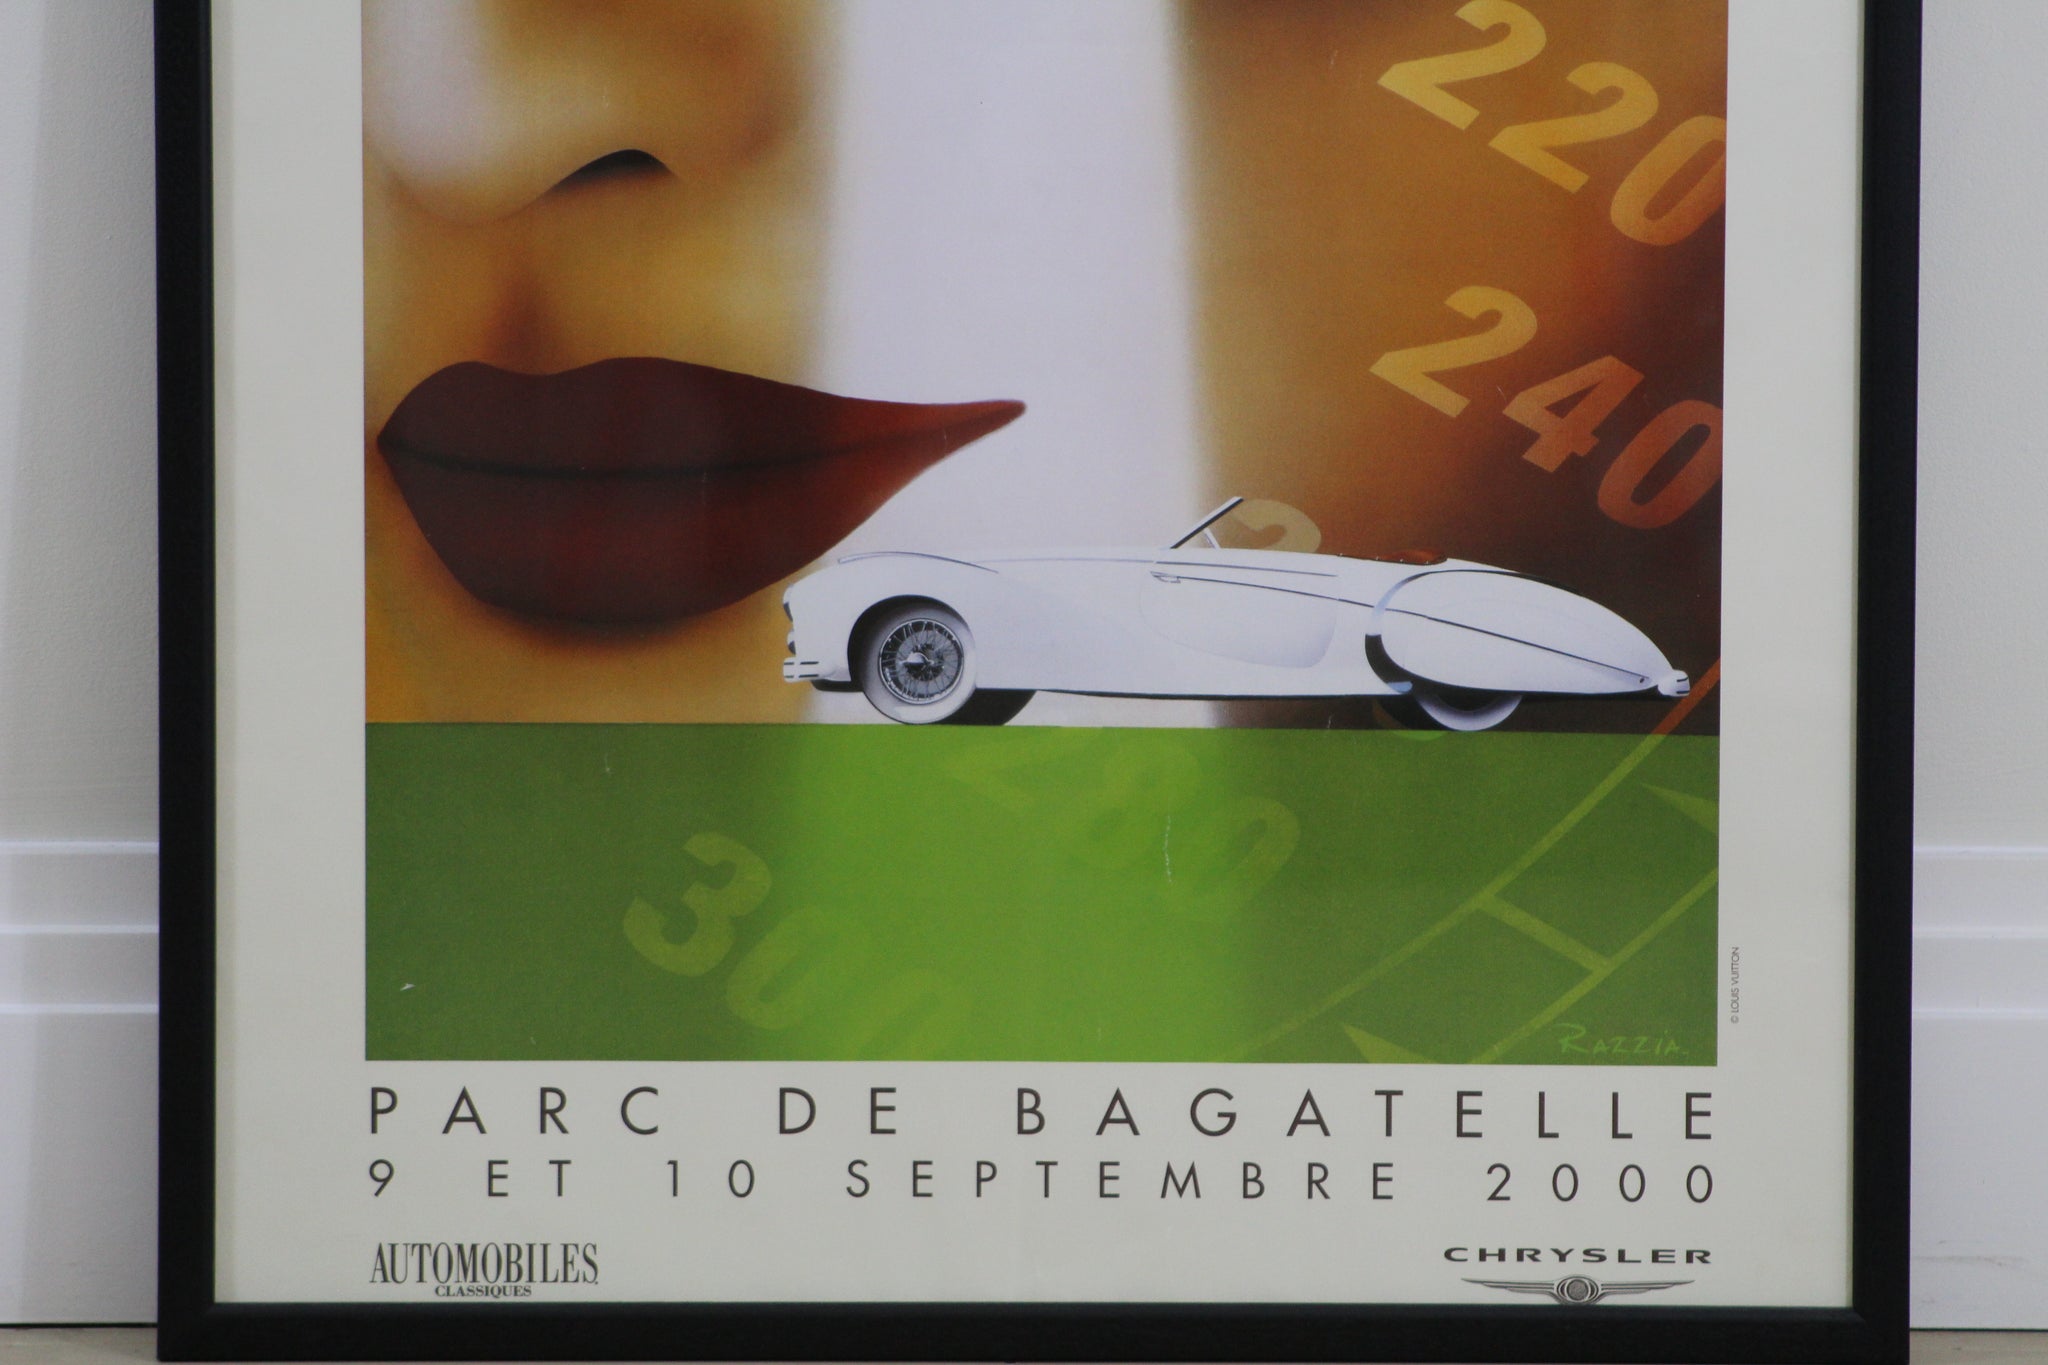 Louis Vuitton Bagatelle Concours d'Elegance event poster by Razzia